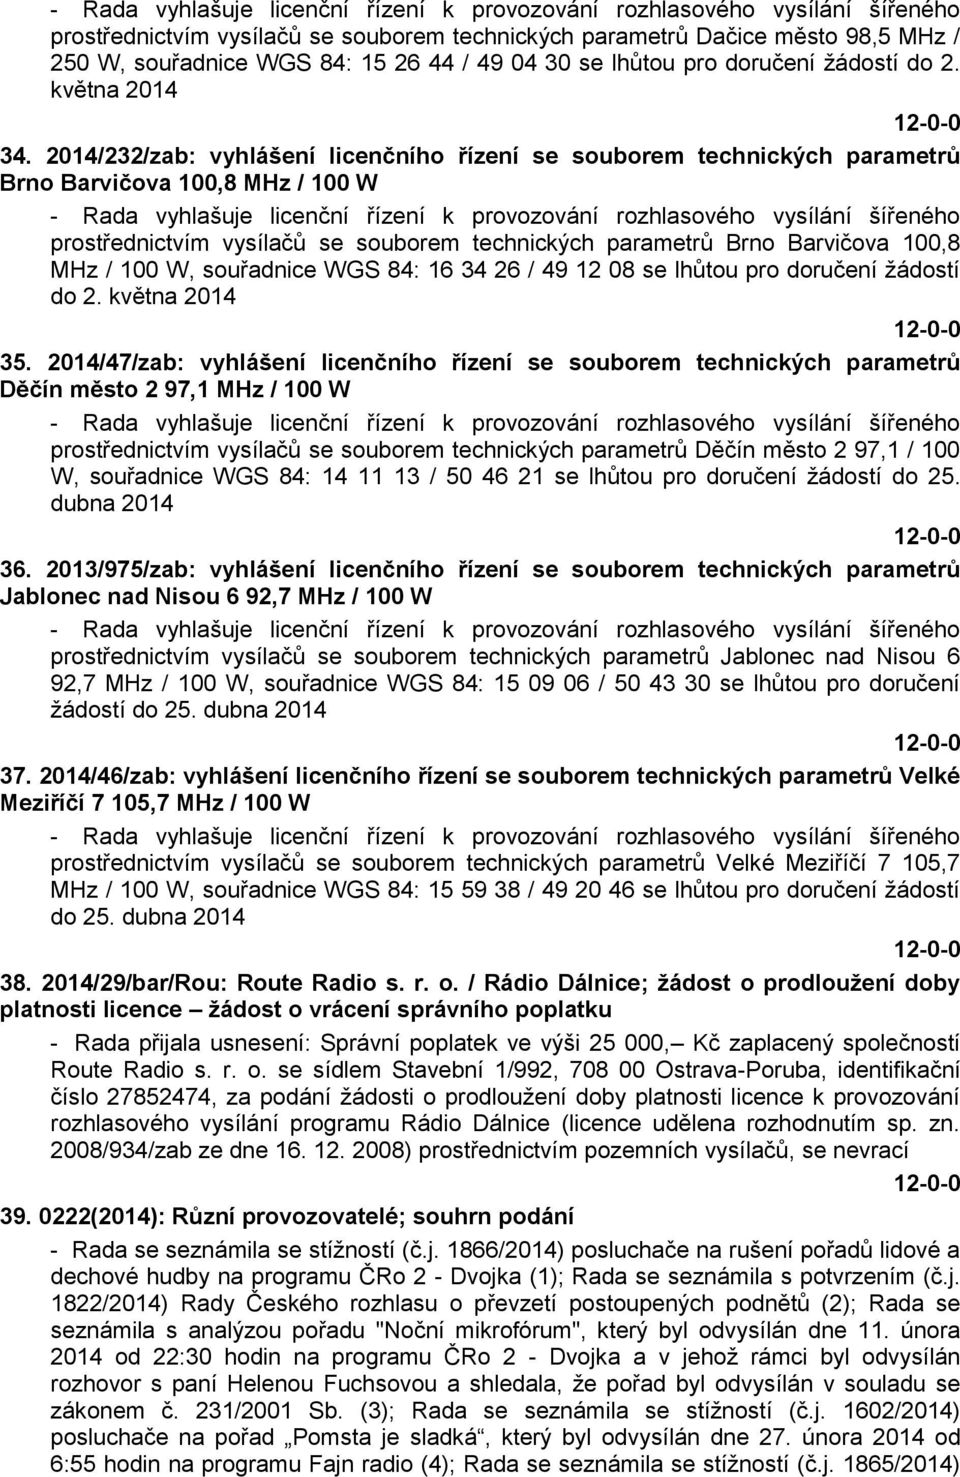 2014/232/zab: vyhlášení licenčního řízení se souborem technických parametrů Brno Barvičova 100,8 MHz / 100 W - Rada vyhlašuje licenční řízení k provozování rozhlasového vysílání šířeného